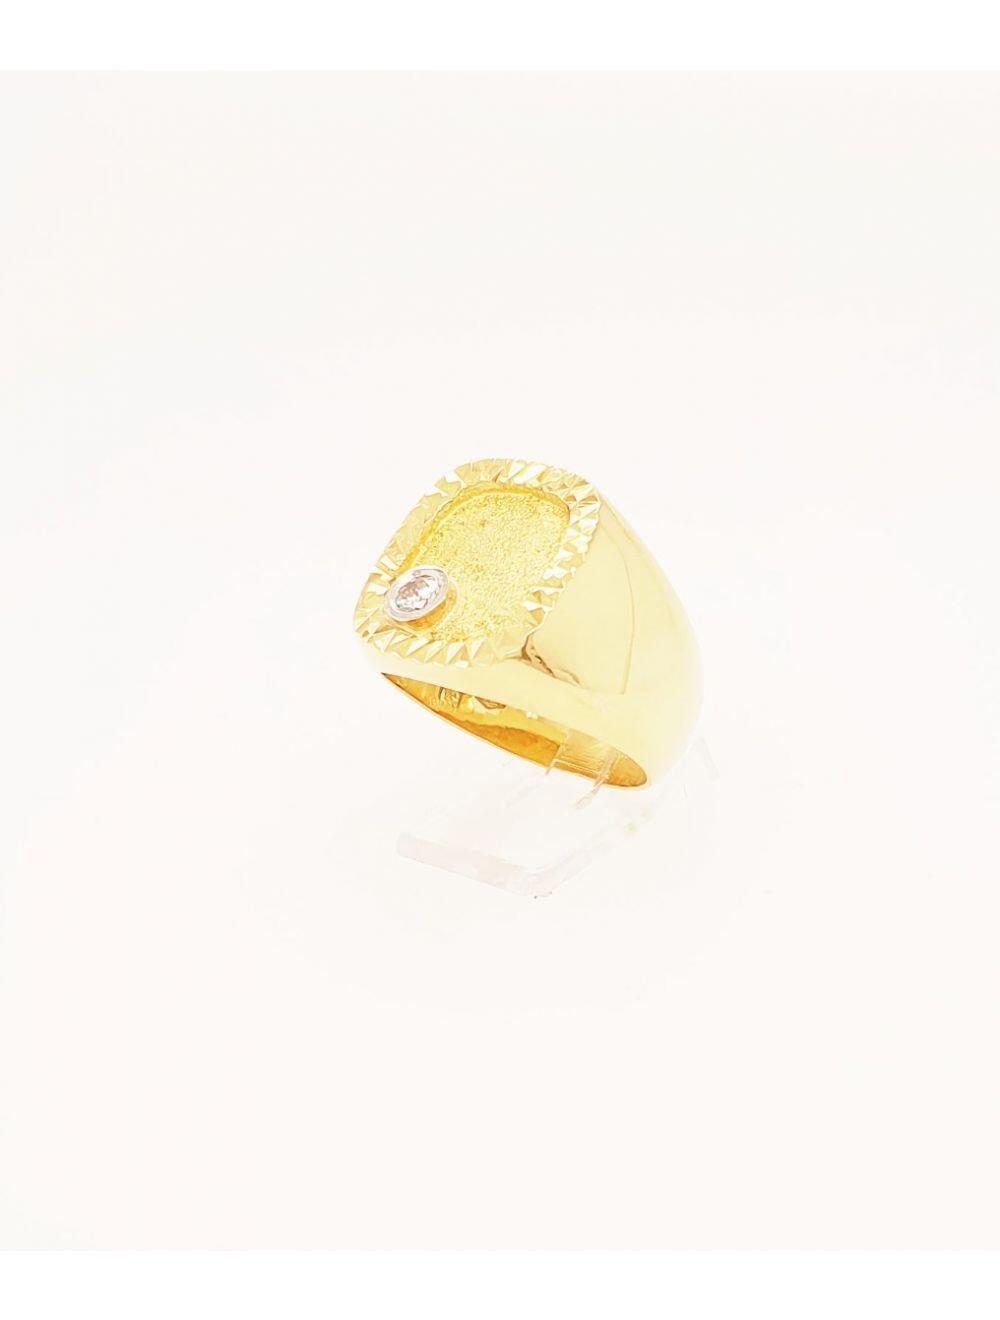 # Bague chevalière or jaune avec 0.11ct diamant naturel serti clos or blanc